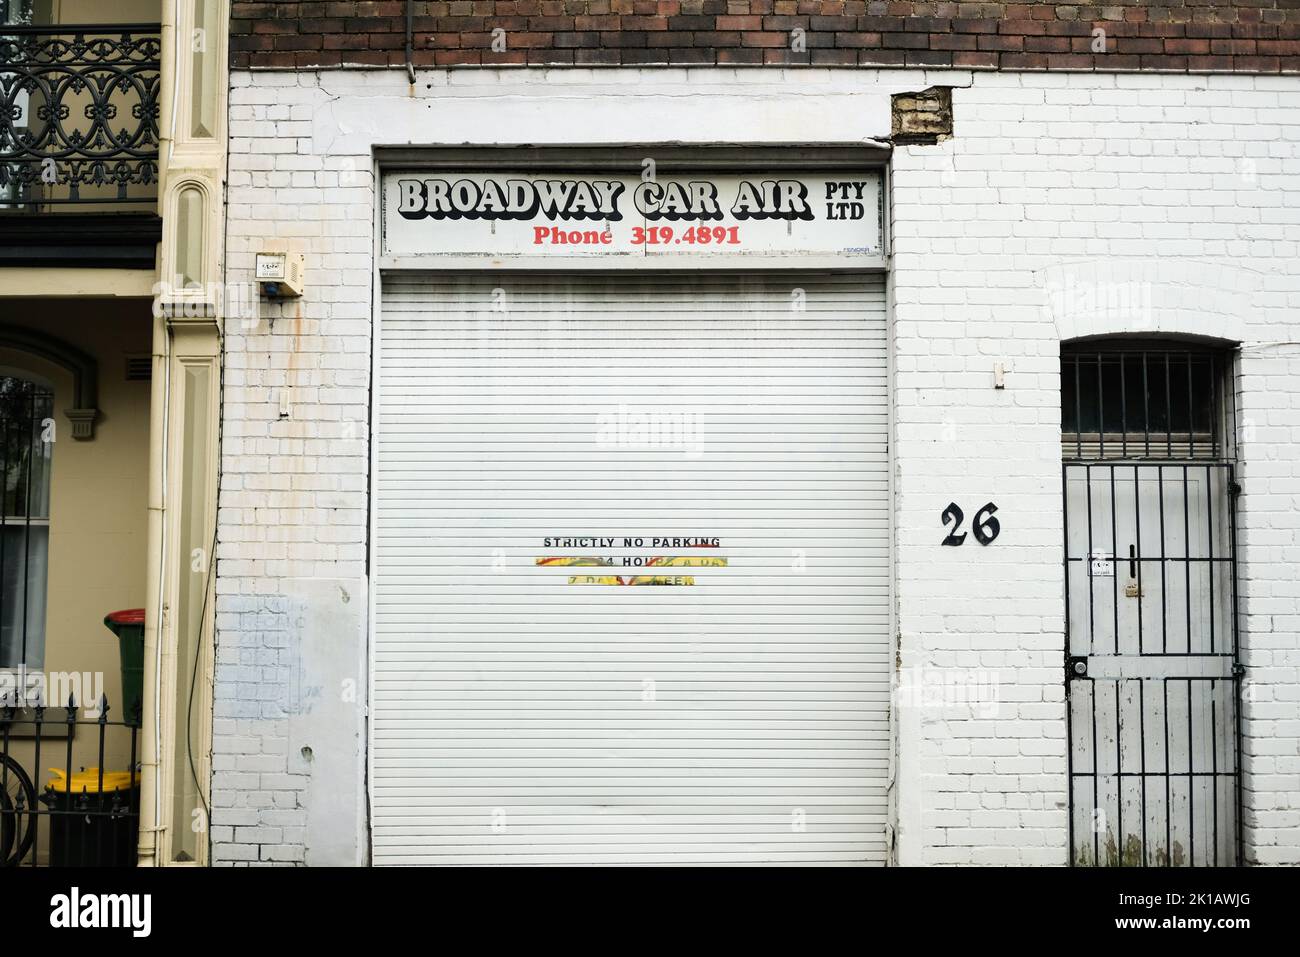 « Broadway car Air » : atelier de réparation automobile à Chippendale, Sydney — Nouvelle-Galles du Sud, Australie Banque D'Images